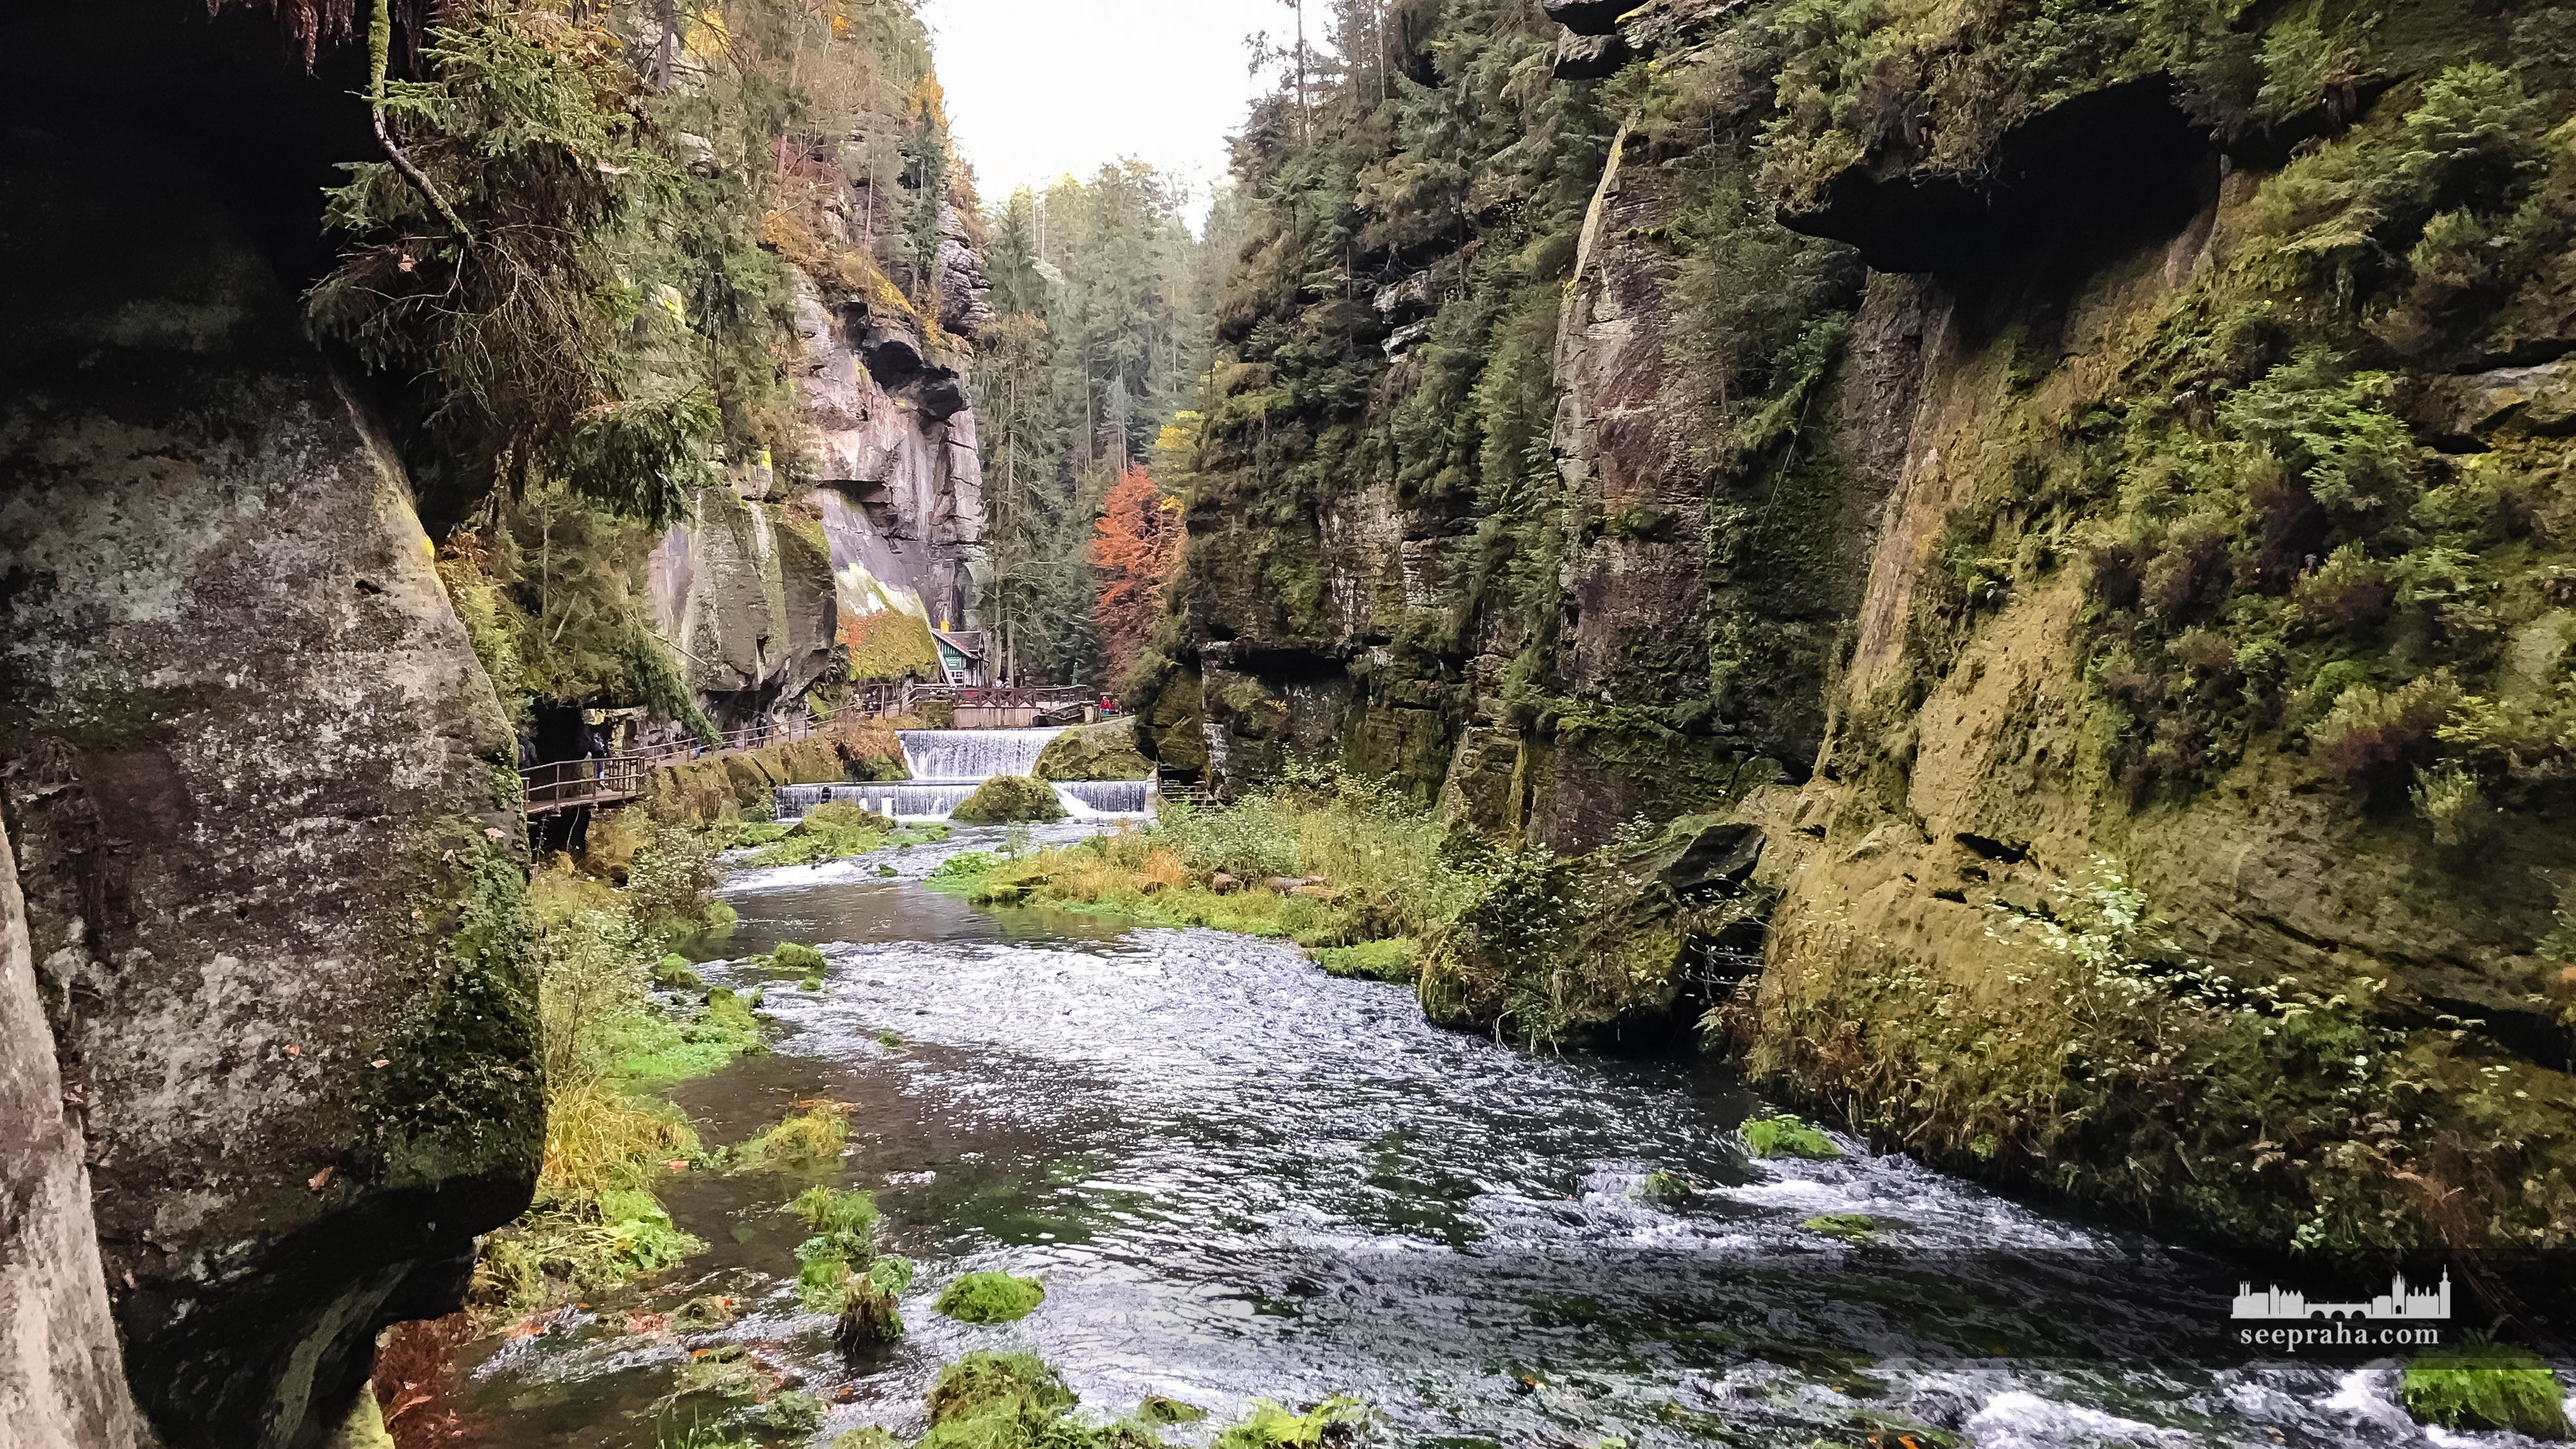 Les gorges Edmond et la rivière Kamenice, Parc national de la Suisse bohémienne, République tchèque